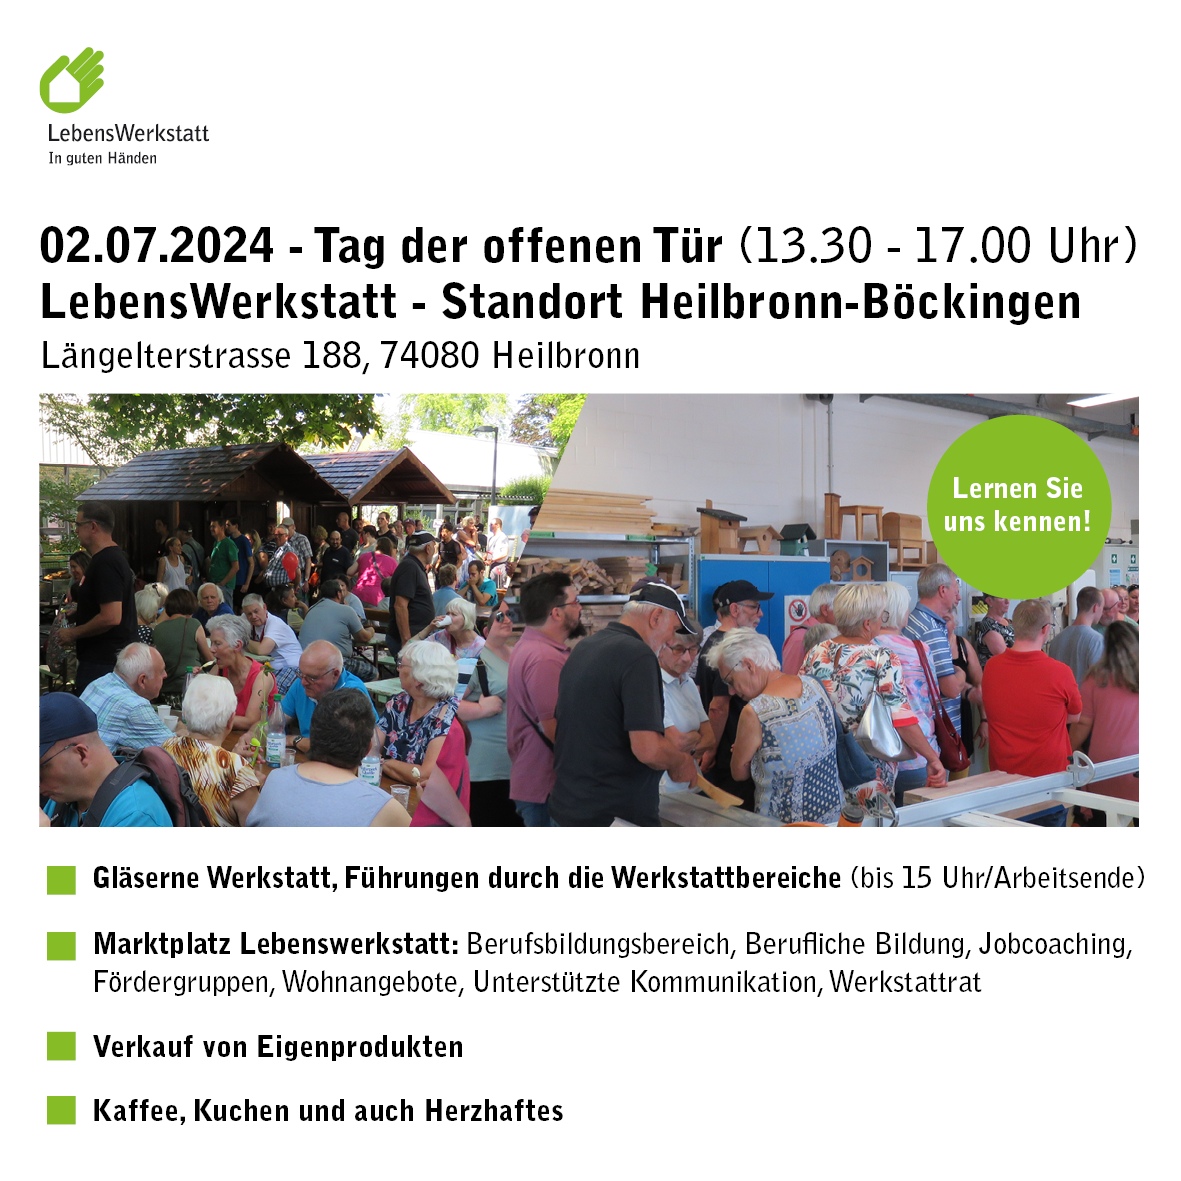 02.07.2024 – Tag der offenen Tür (von 13.30 – 17.00 Uhr) am Standort in Heilbronn-Böckingen